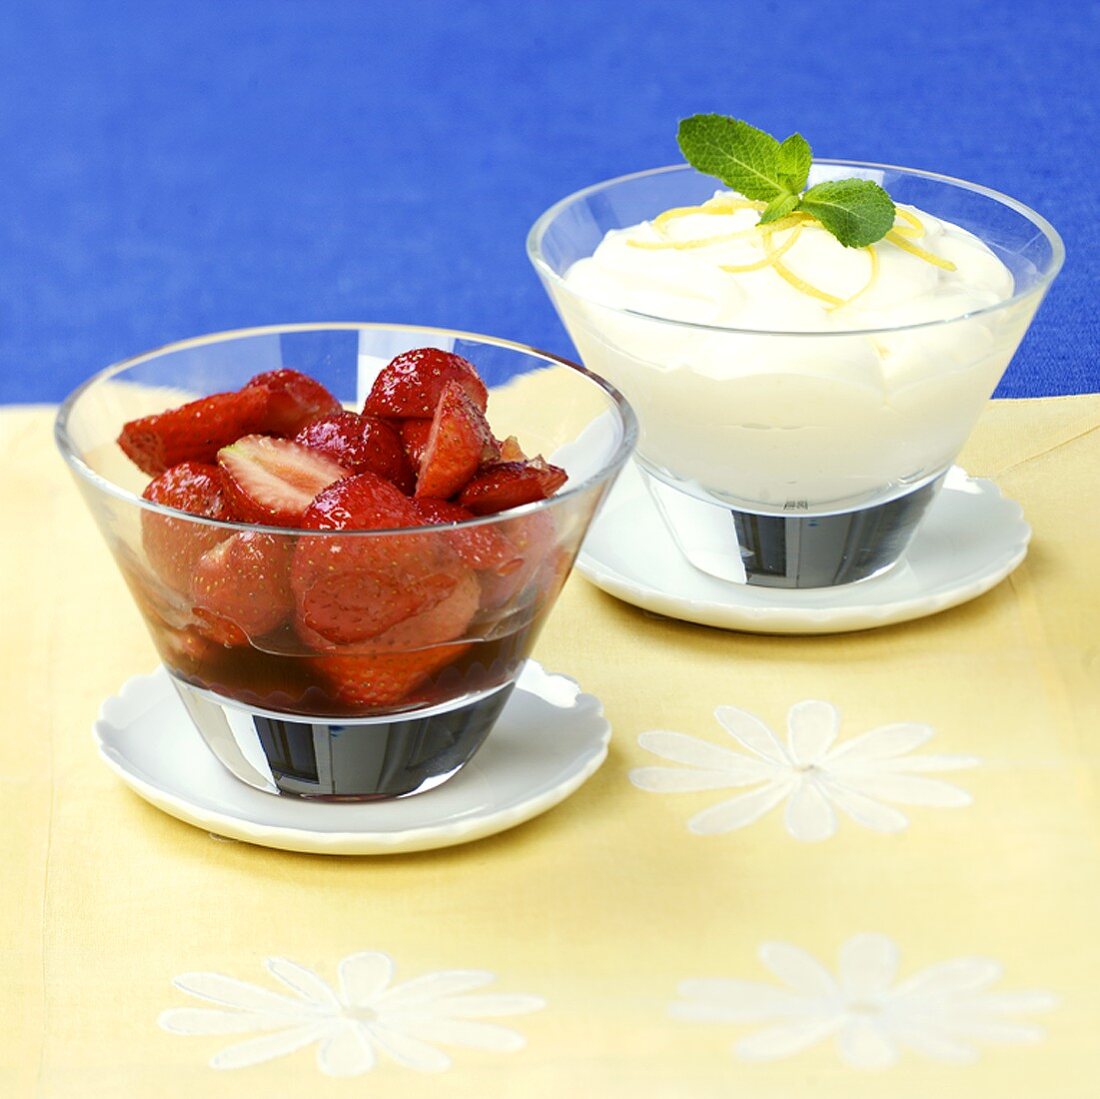 Marinated strawberries with lemon cream